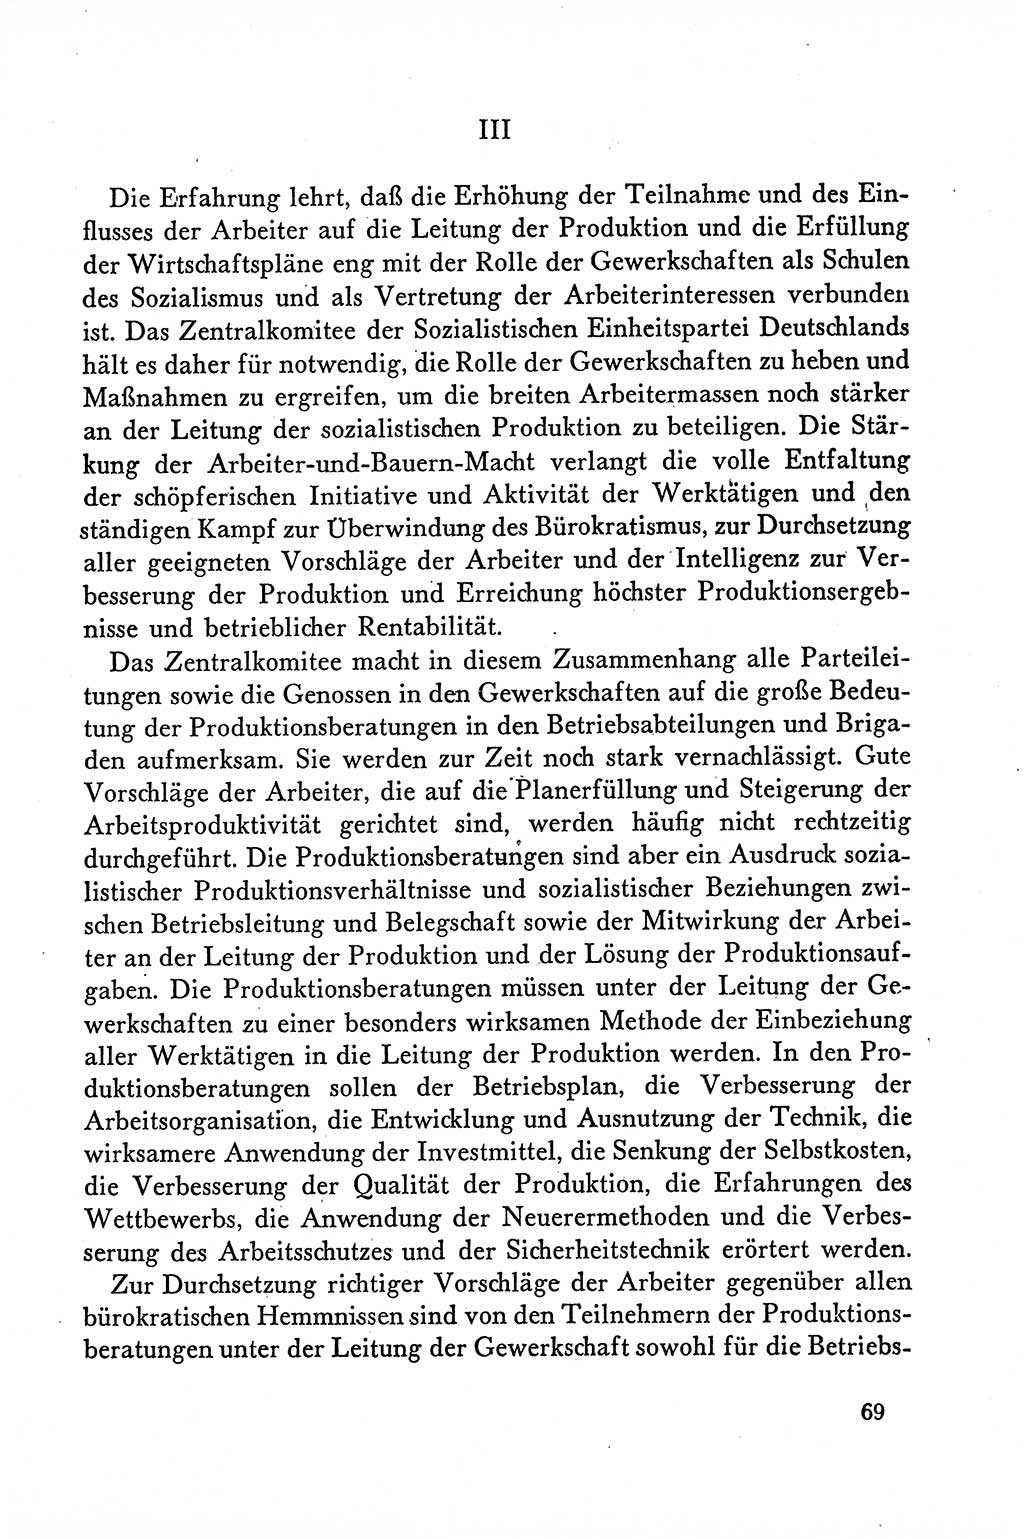 Dokumente der Sozialistischen Einheitspartei Deutschlands (SED) [Deutsche Demokratische Republik (DDR)] 1958-1959, Seite 69 (Dok. SED DDR 1958-1959, S. 69)